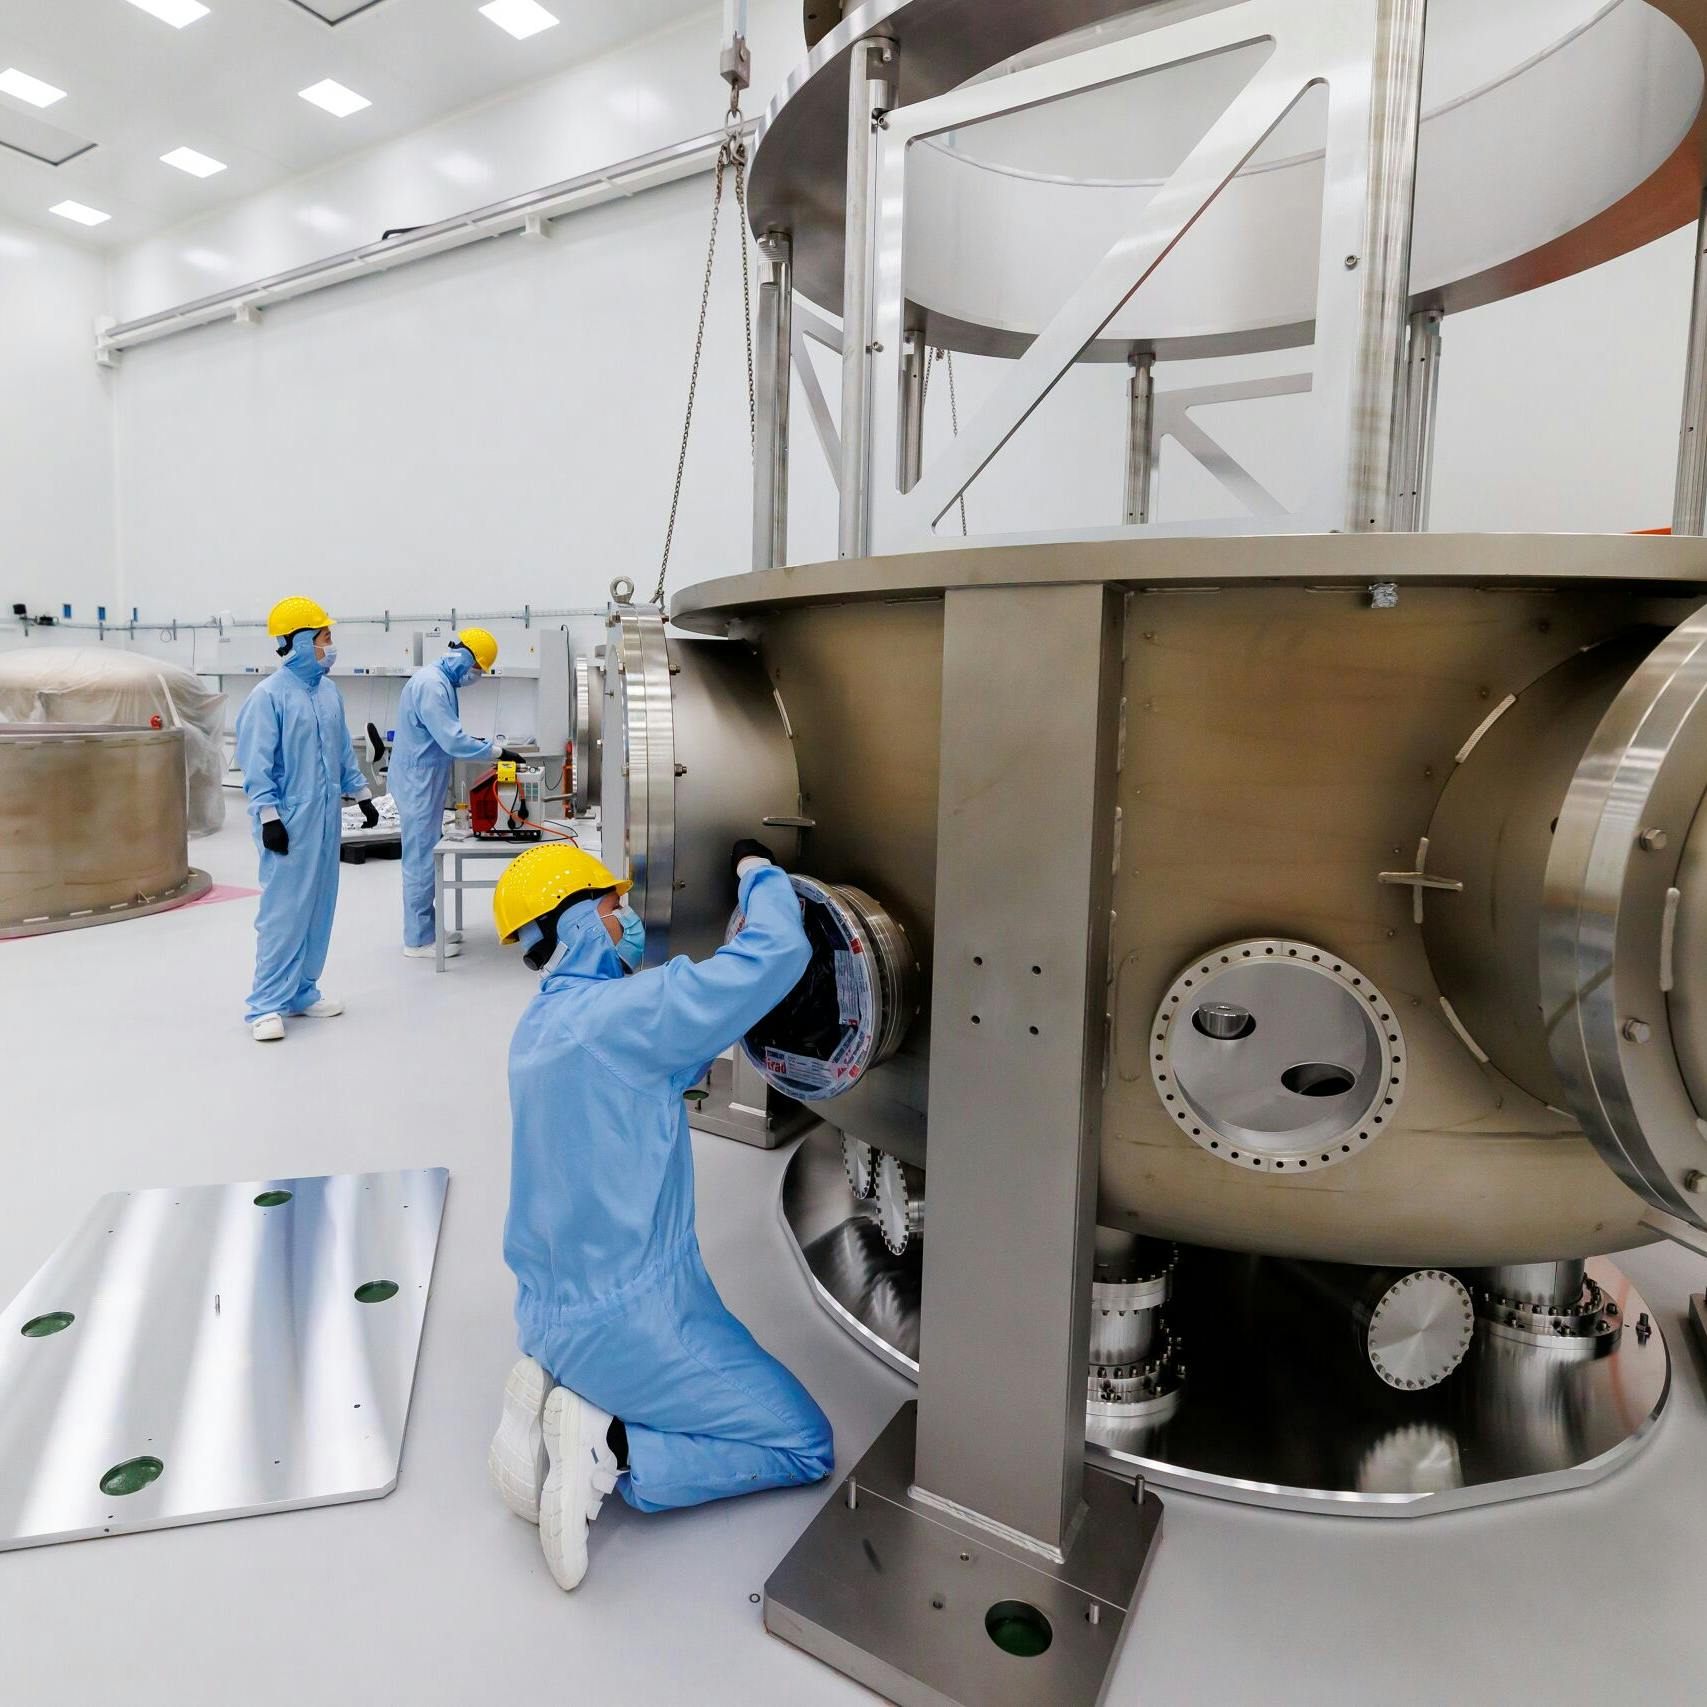 Kabinet steekt 42 miljoen euro uit Groeifonds in Einstein Telescoop 